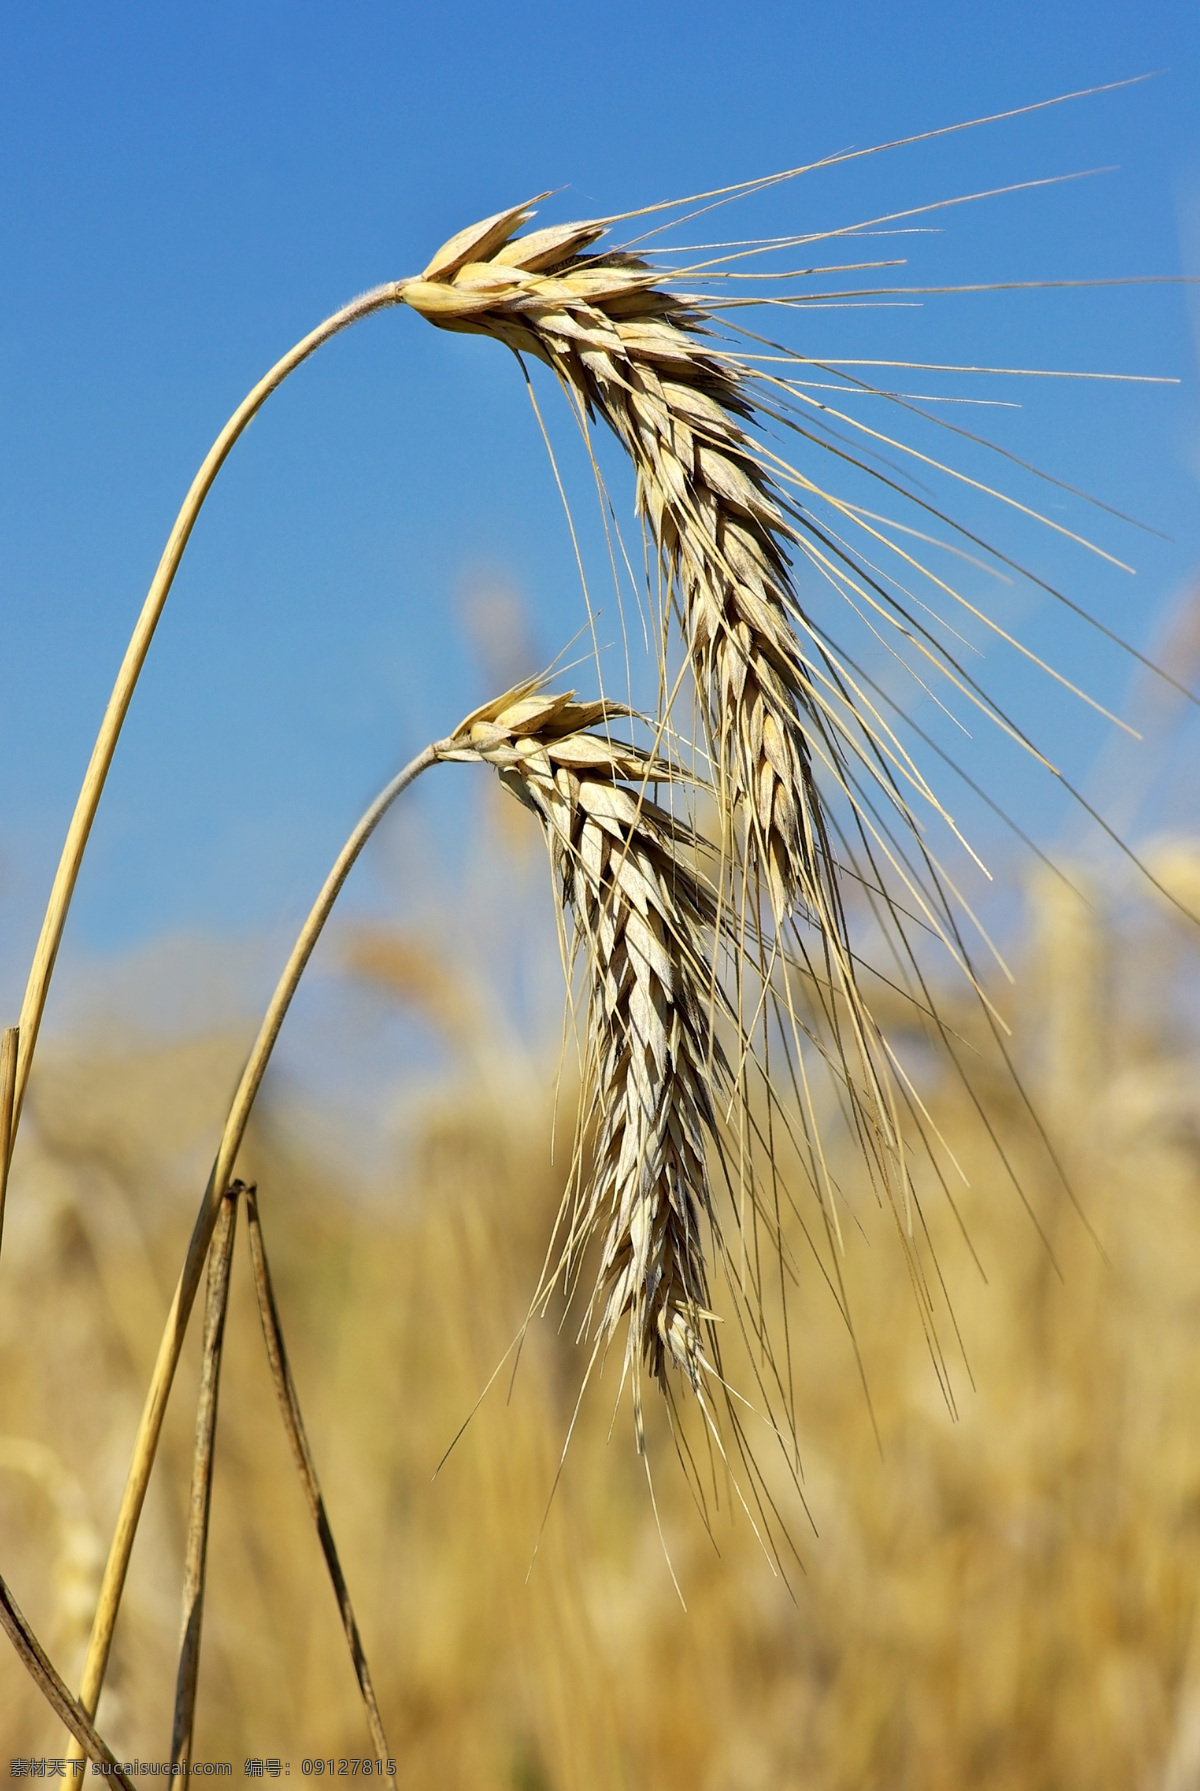 小麦 麦穗 小麦特写 麦地 田园 小麦素材 金色小麦 粮食 麦子成熟 麦田 麦子 北方粮食 面食 收获 秋天 自然景观 田园风光